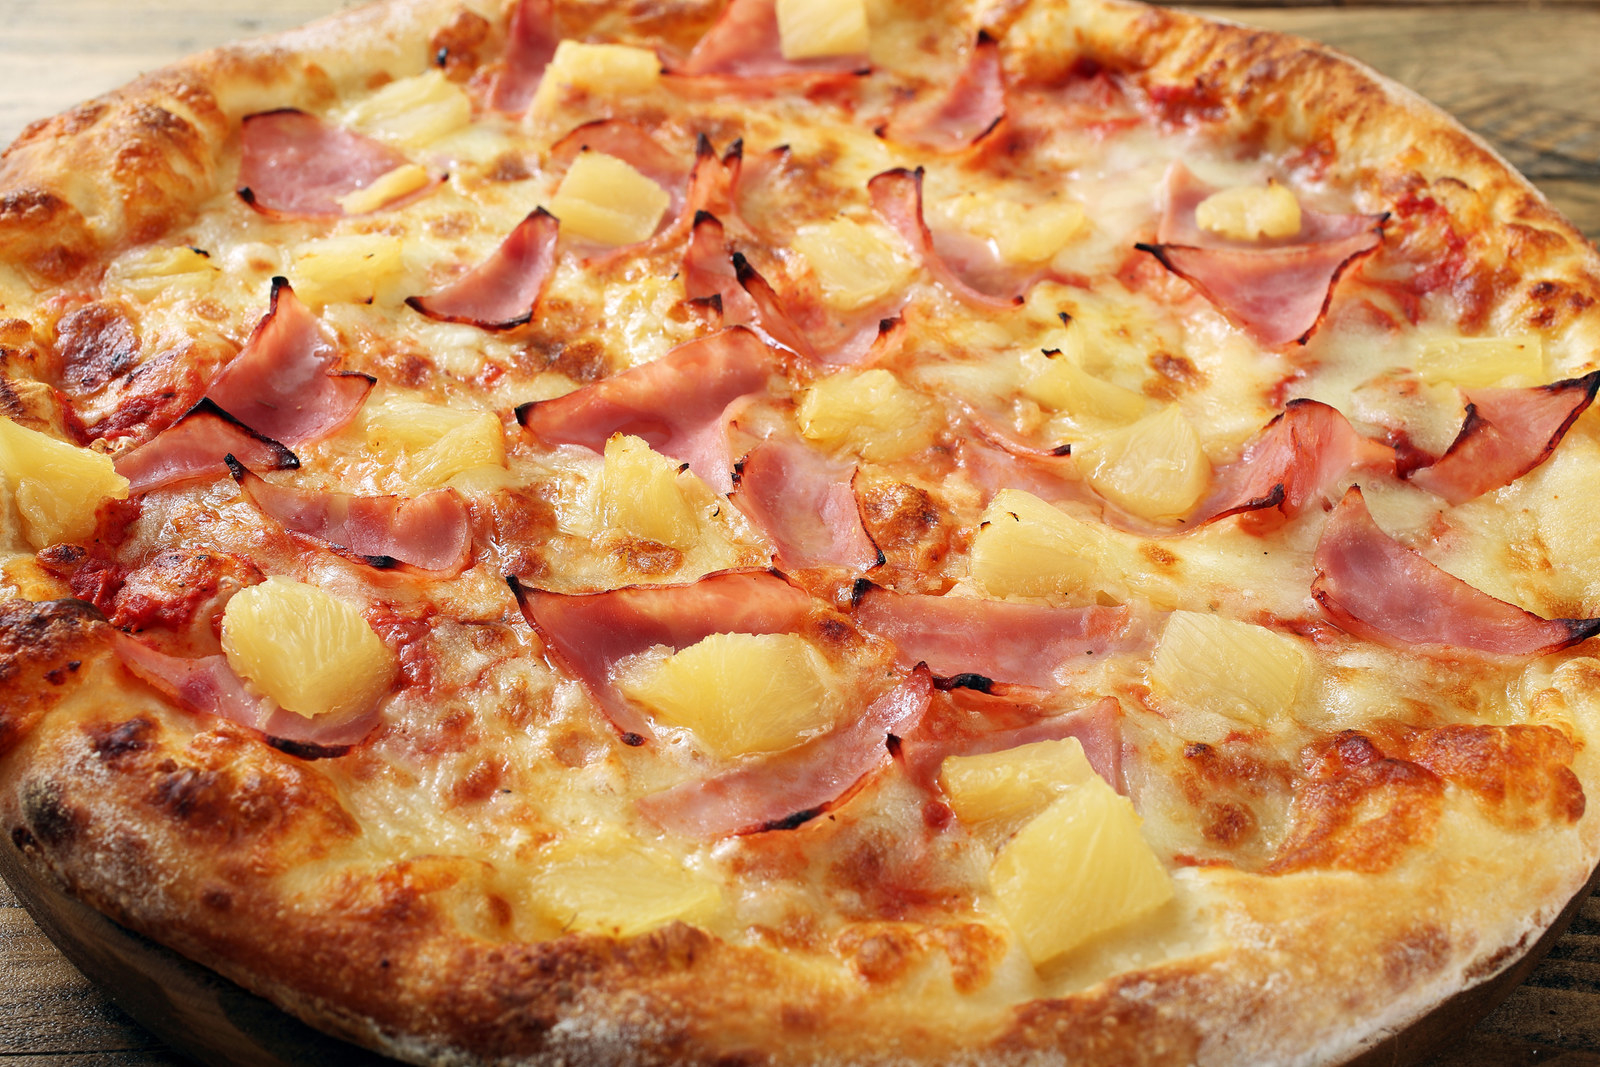 Stock image of Hawaiian pizza